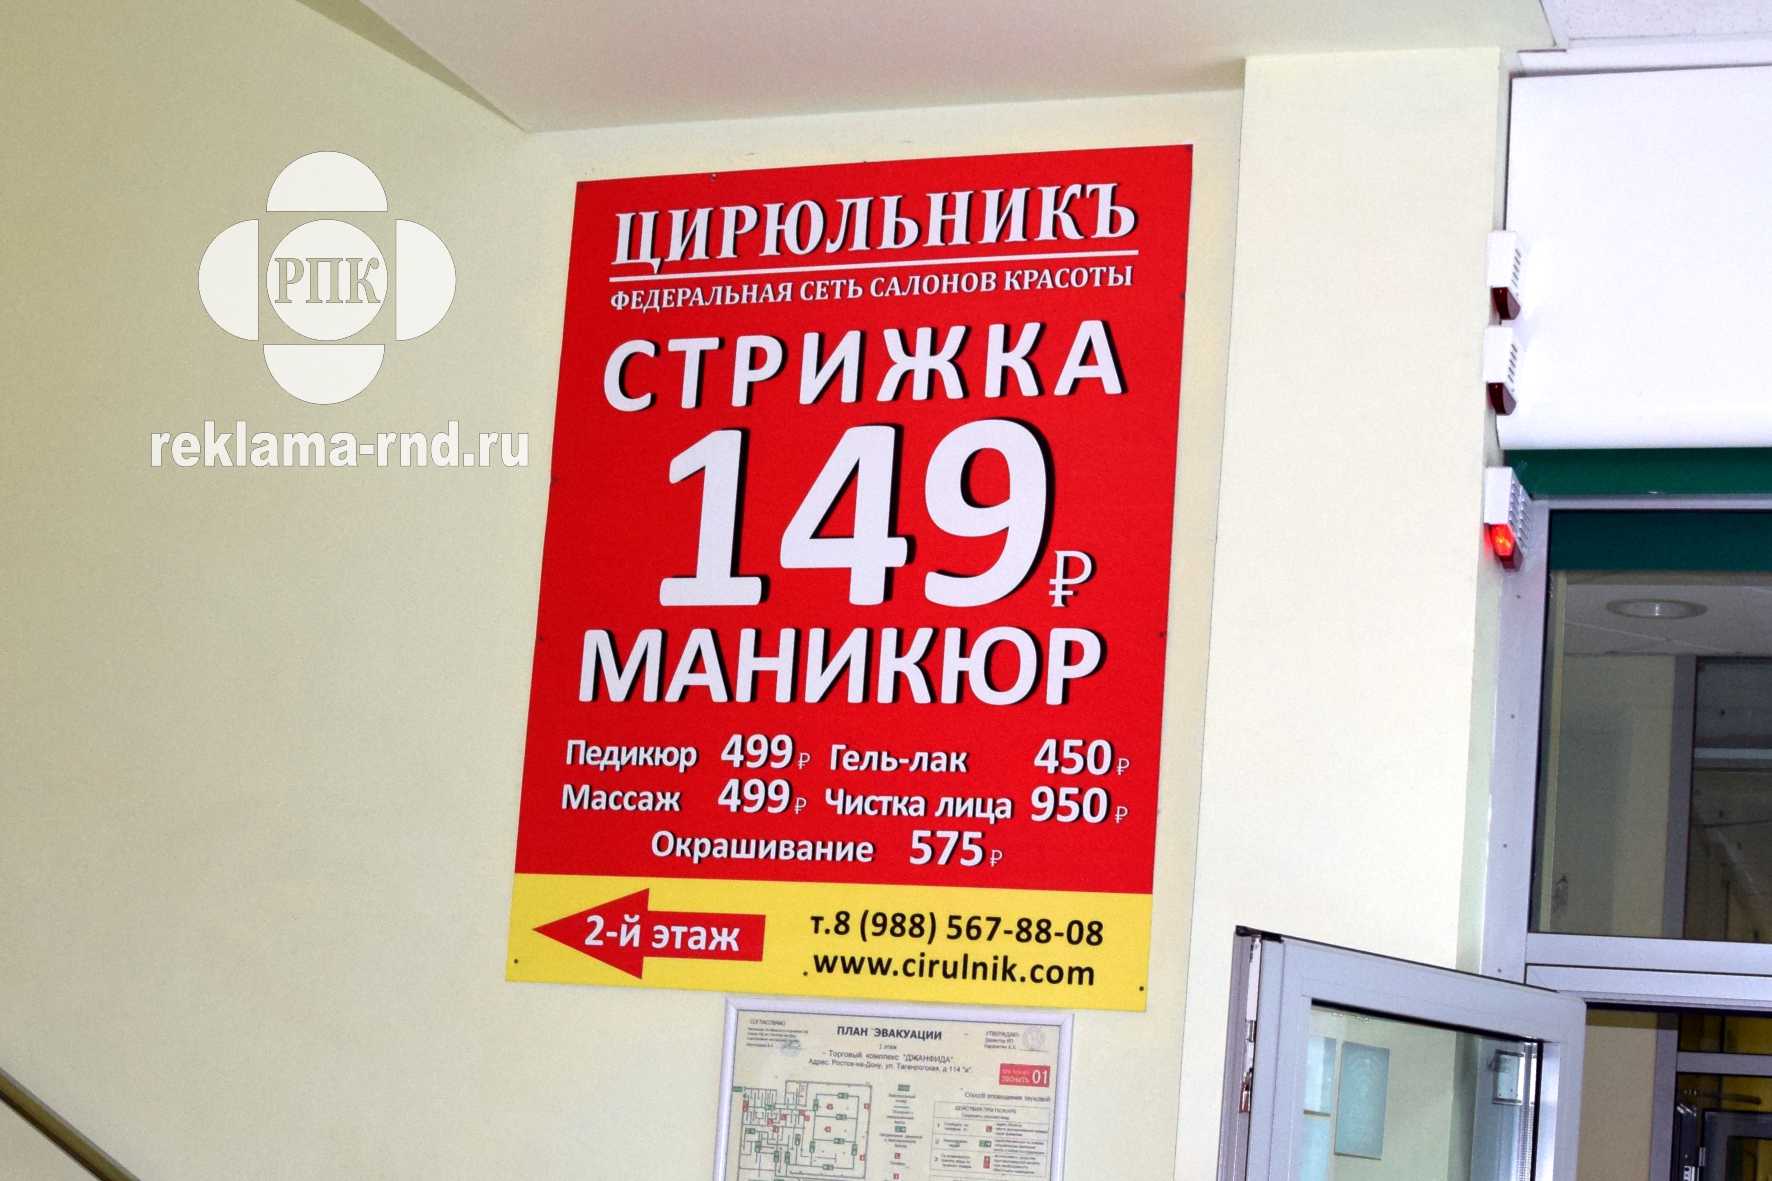 Табличка указатель внутри помещения ТРК в Ростове-на-Дону.